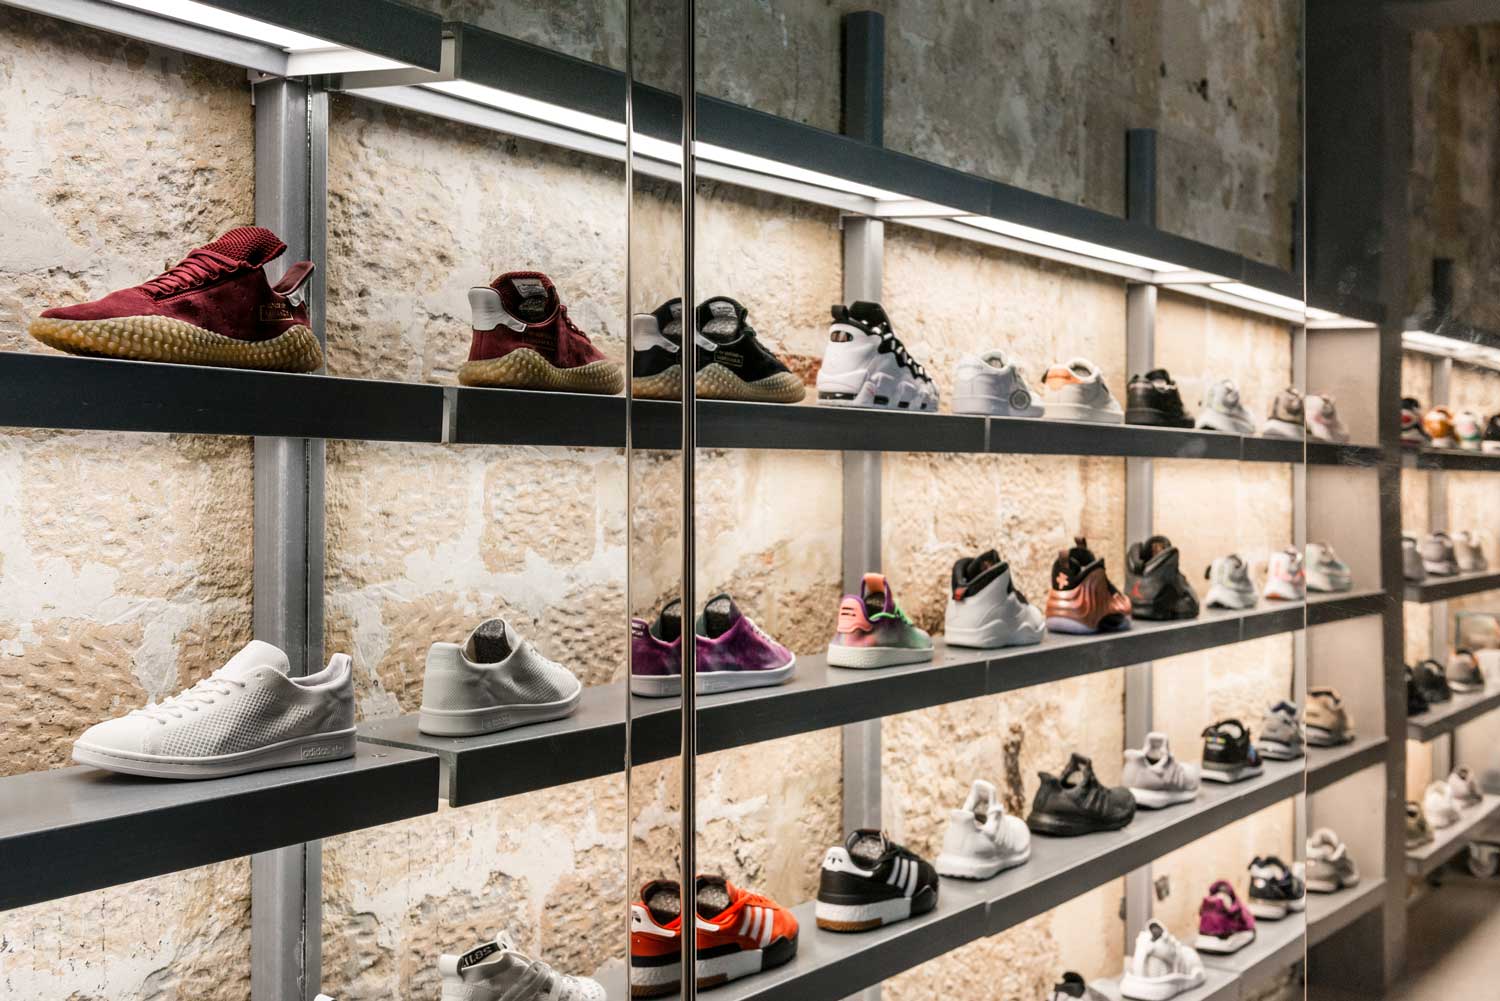 Sneakers магазин кроссовок. Стеллаж с кроссовками. Стили магазинов кроссовок. Идеи для магазина кроссовок. Интерьер магазина кроссовок стиль.